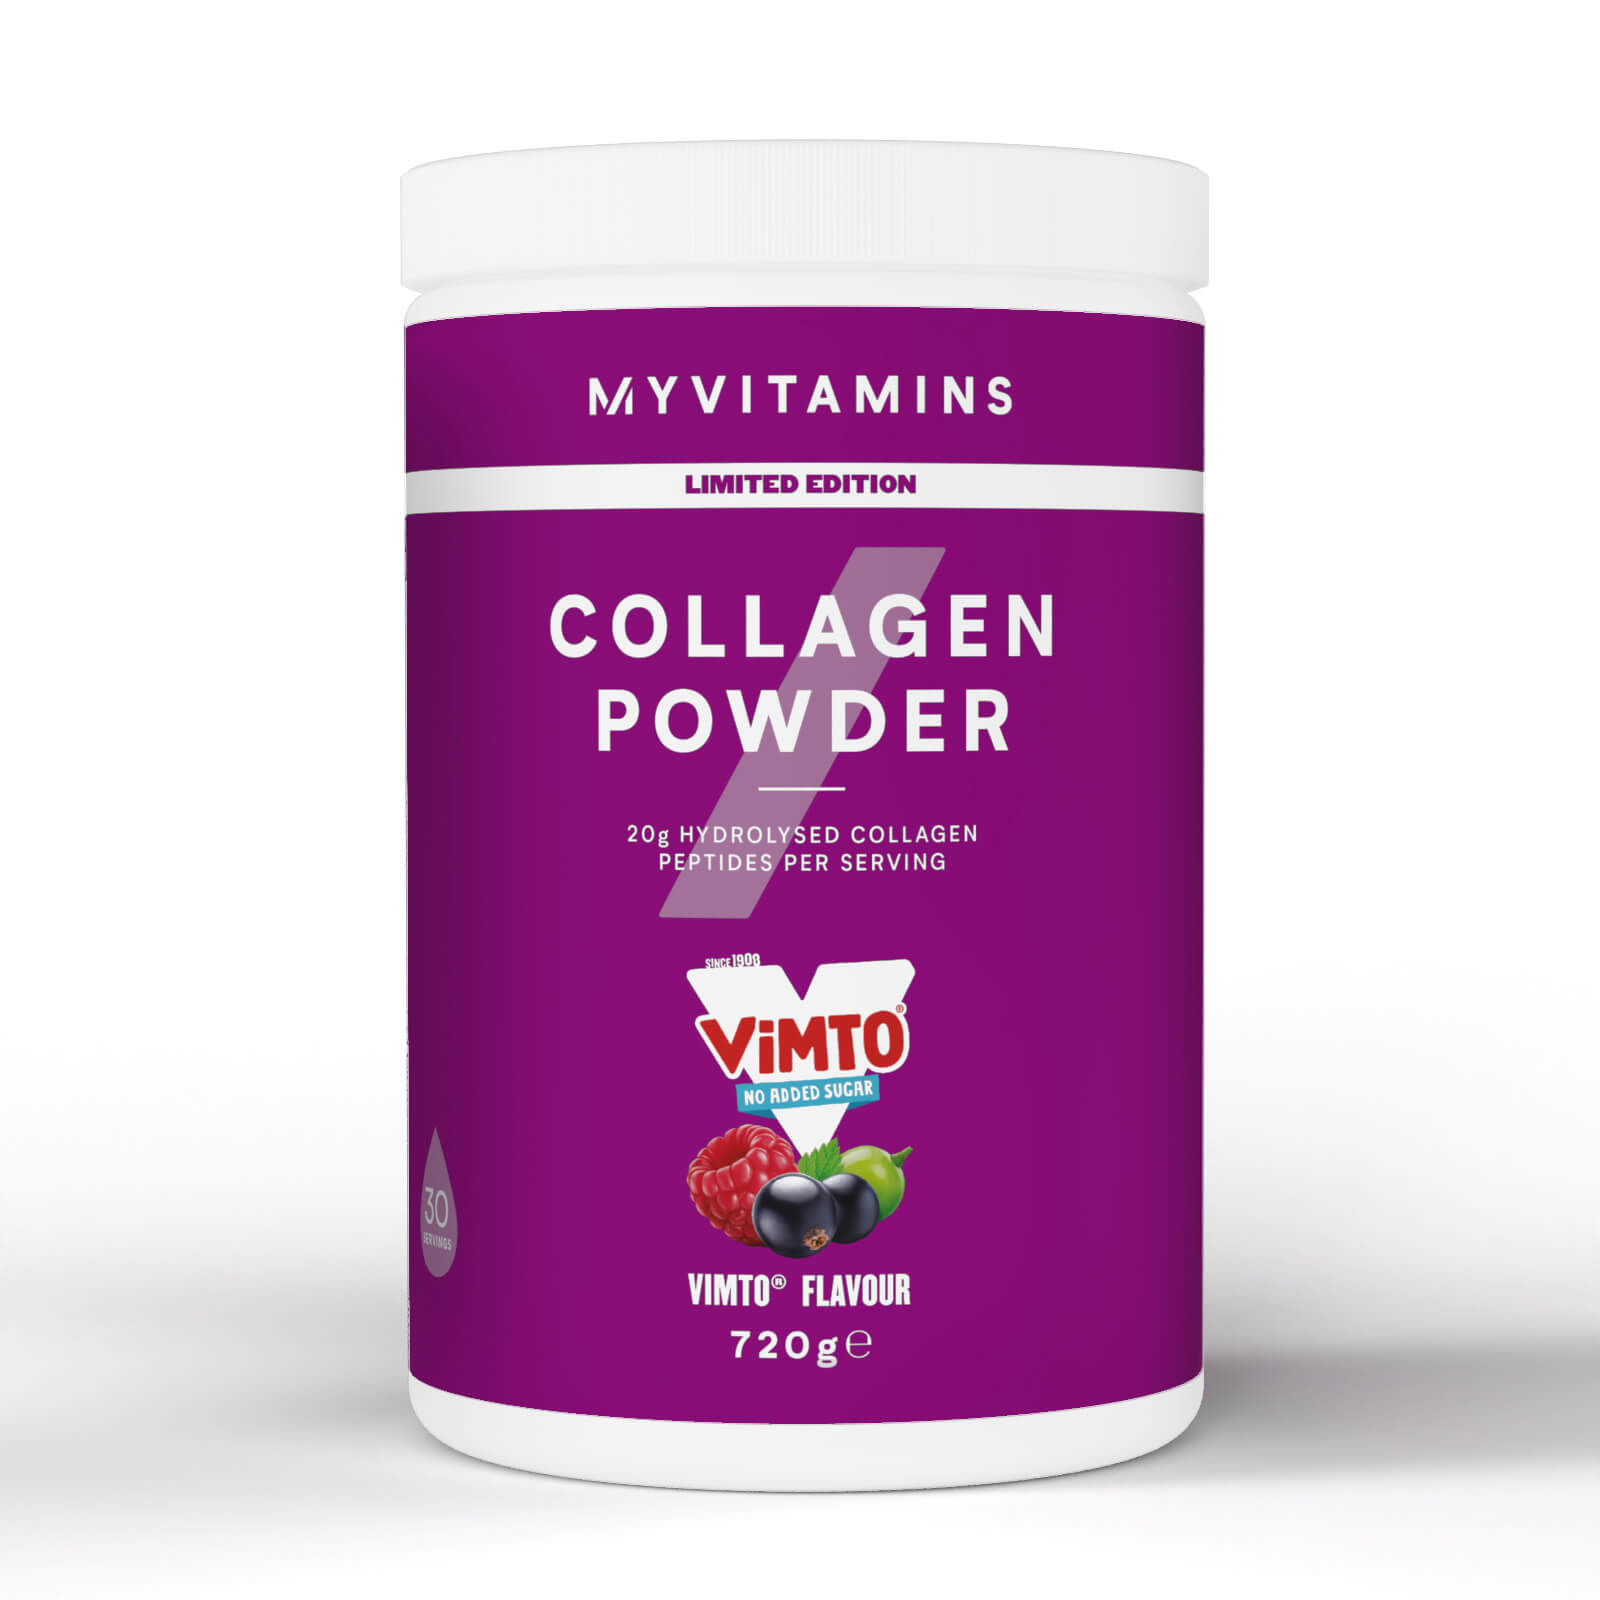 Vimto(r) Clear Collagen Powder